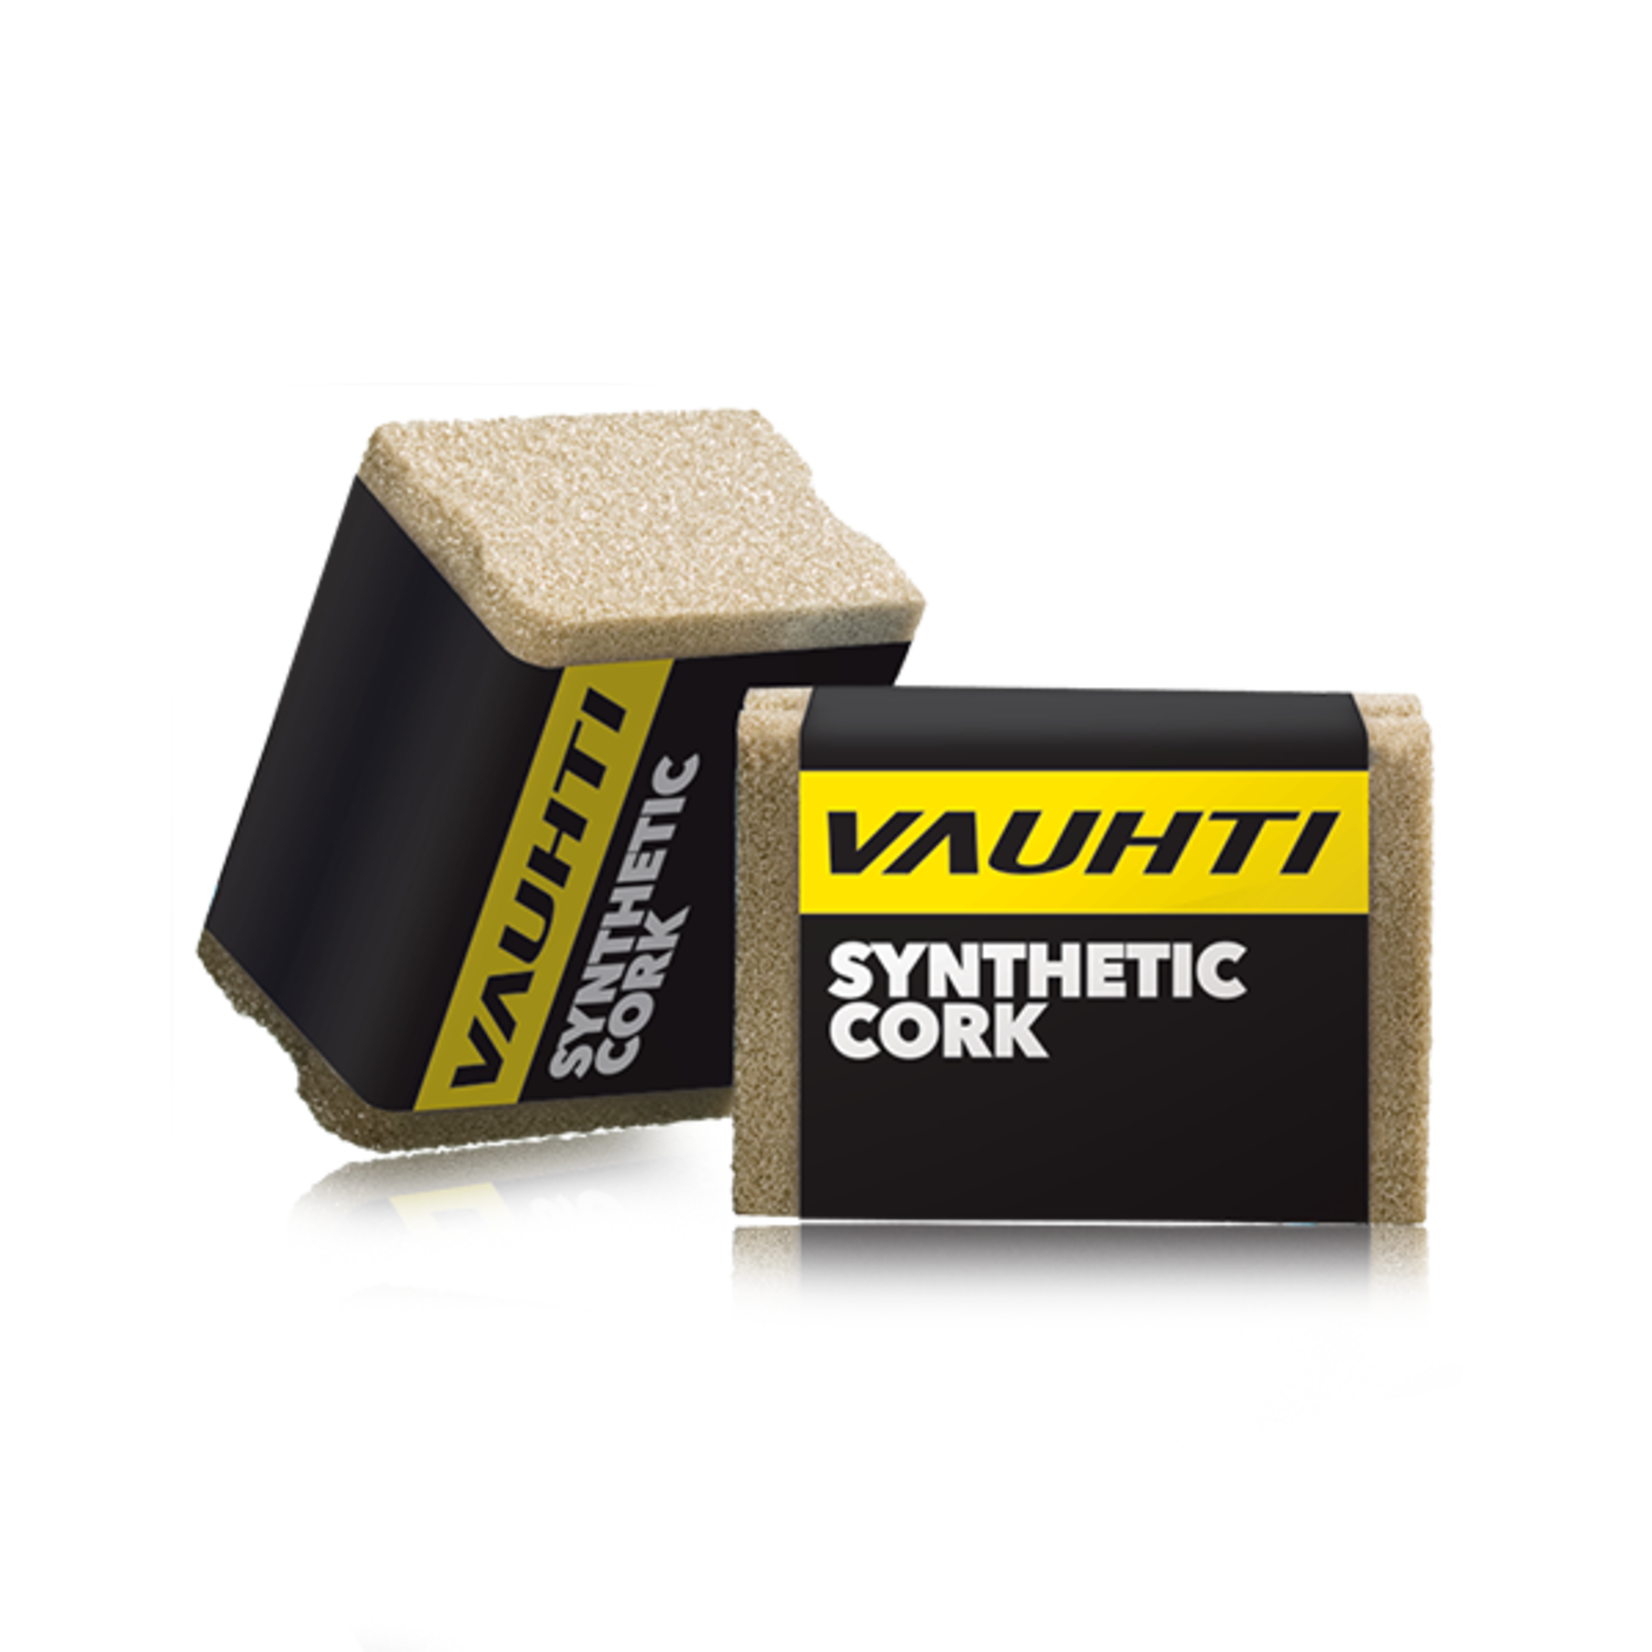 Vauhti Synthetic Cork (liège synthétique pour skis)